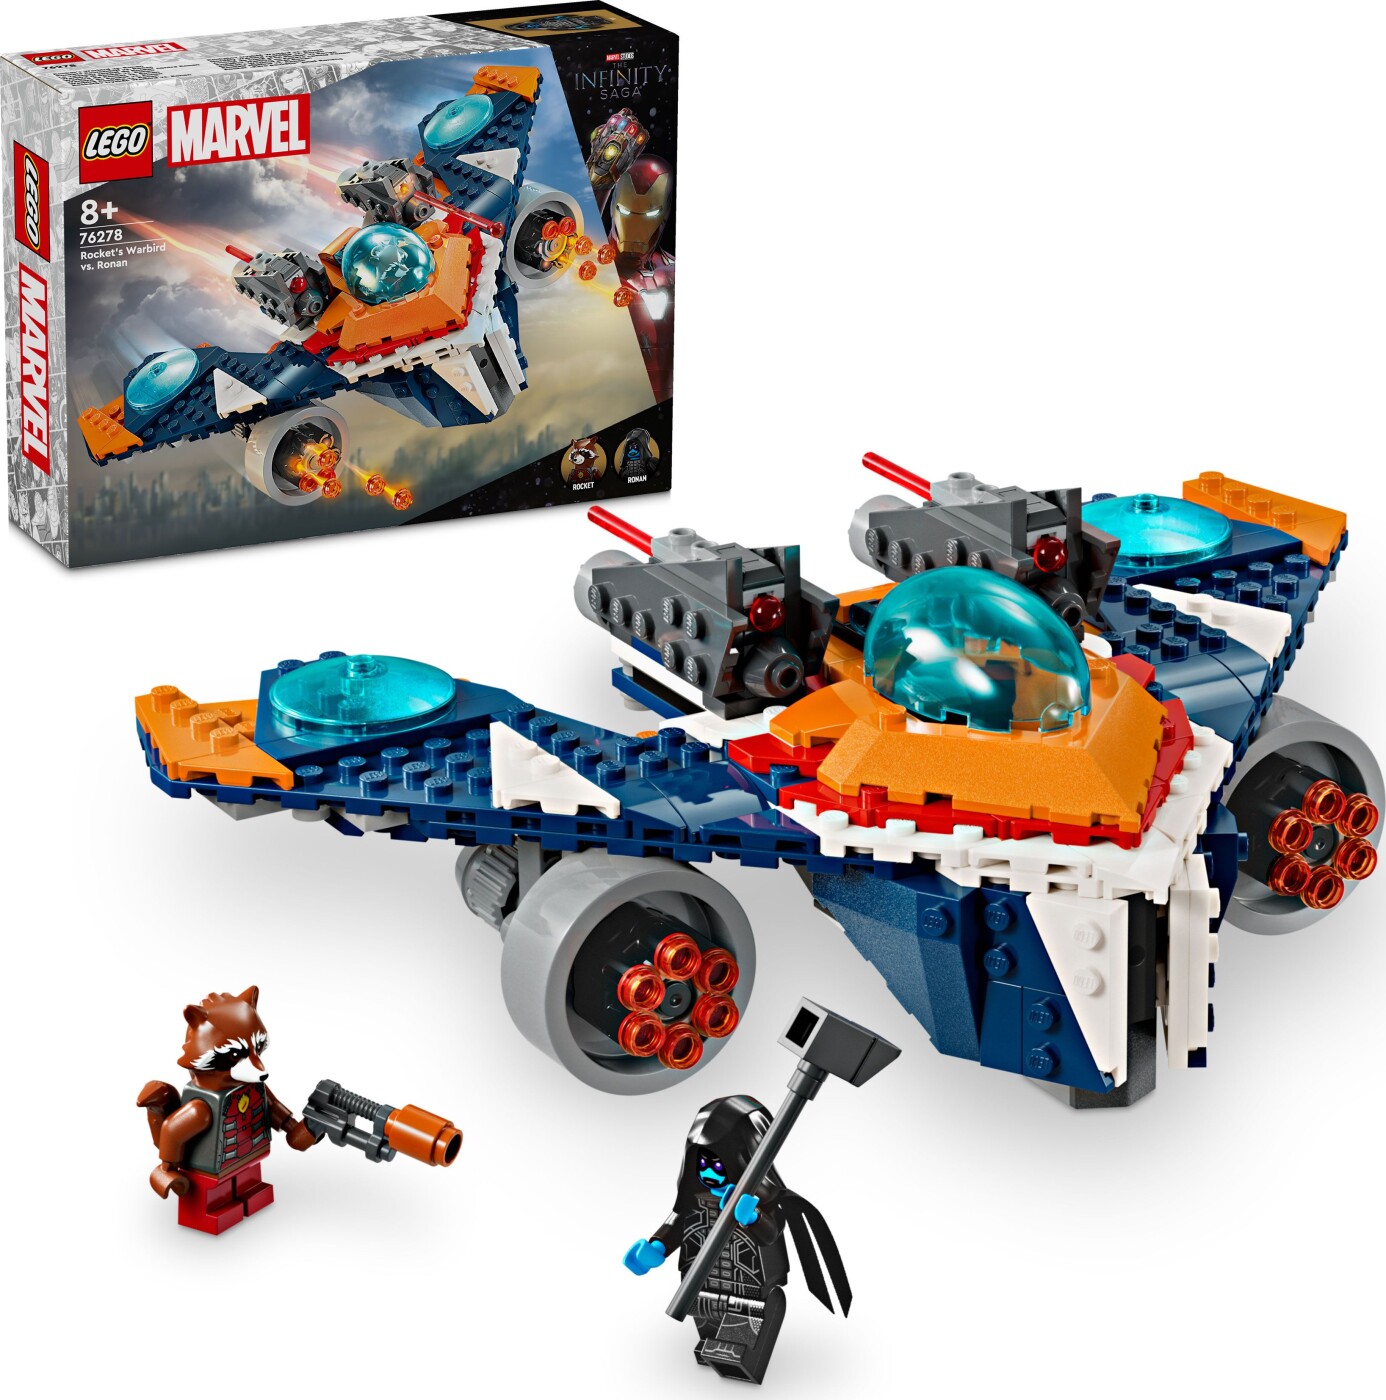 Billede af Lego Super Heroes - Rockets Warbird Mod Ronan - 76278